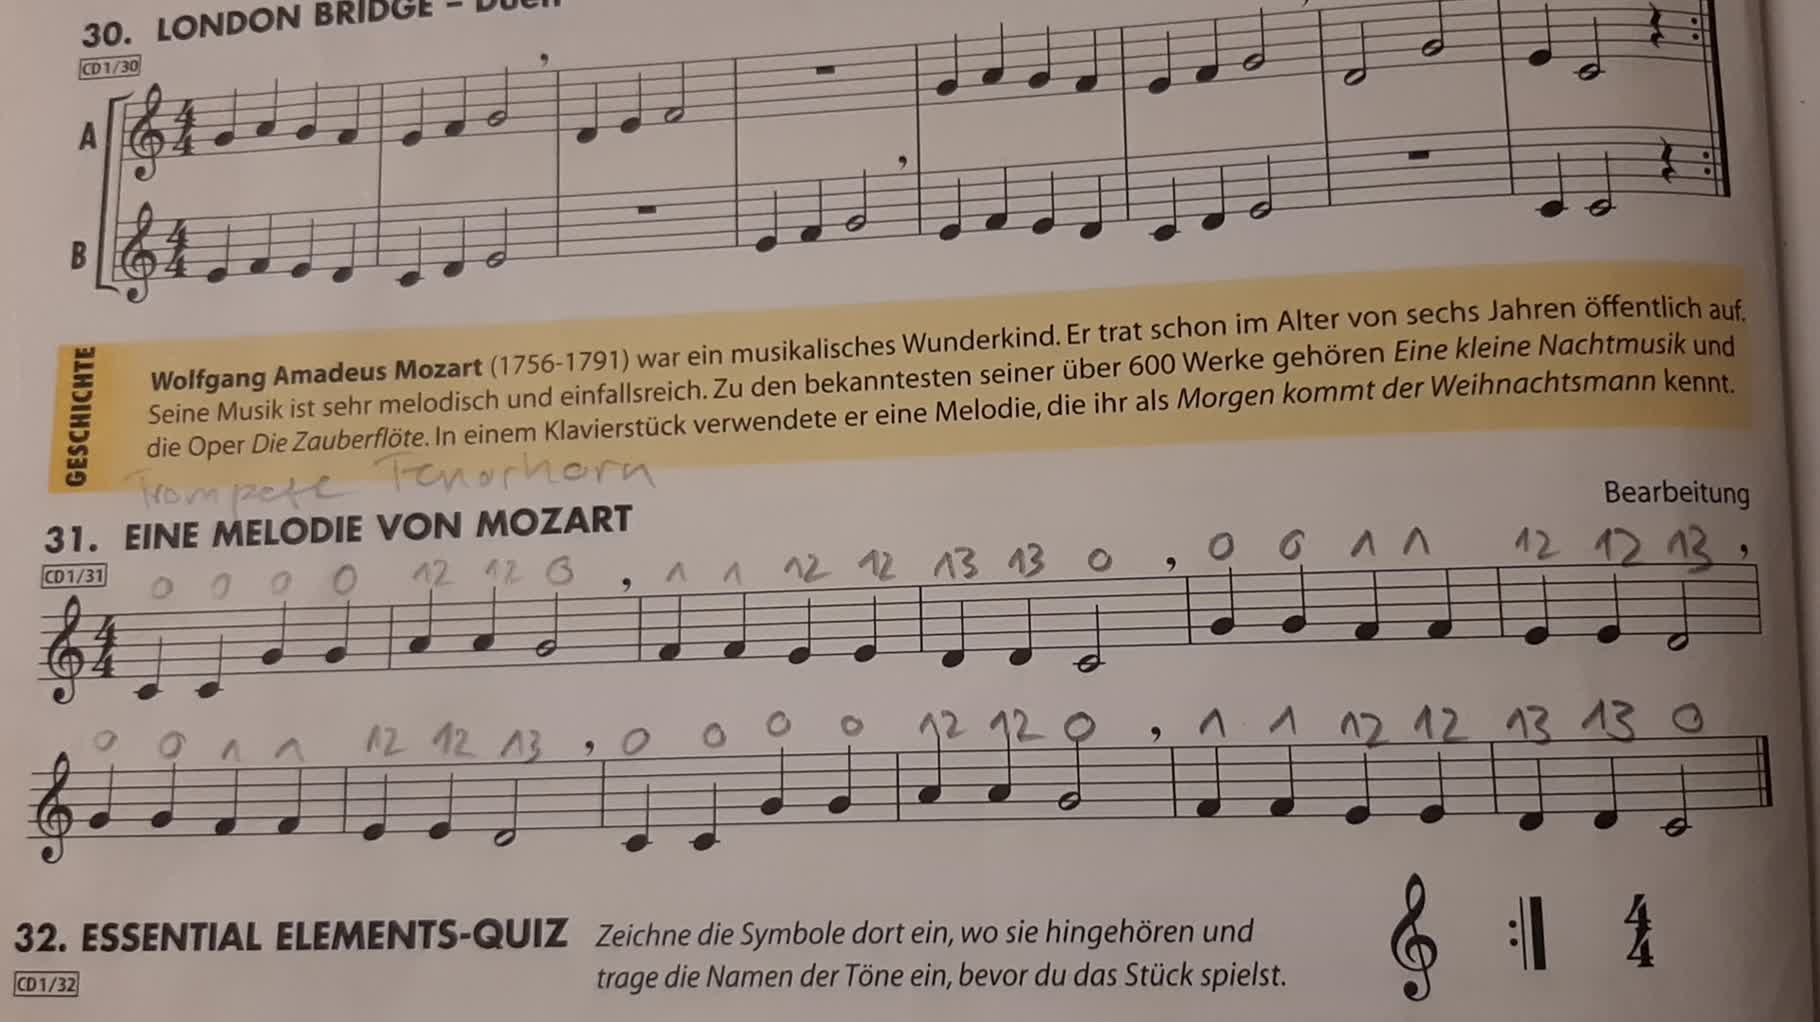 31 Melodie von Mozart -tief- Tenorhorn, Horn, Posaune